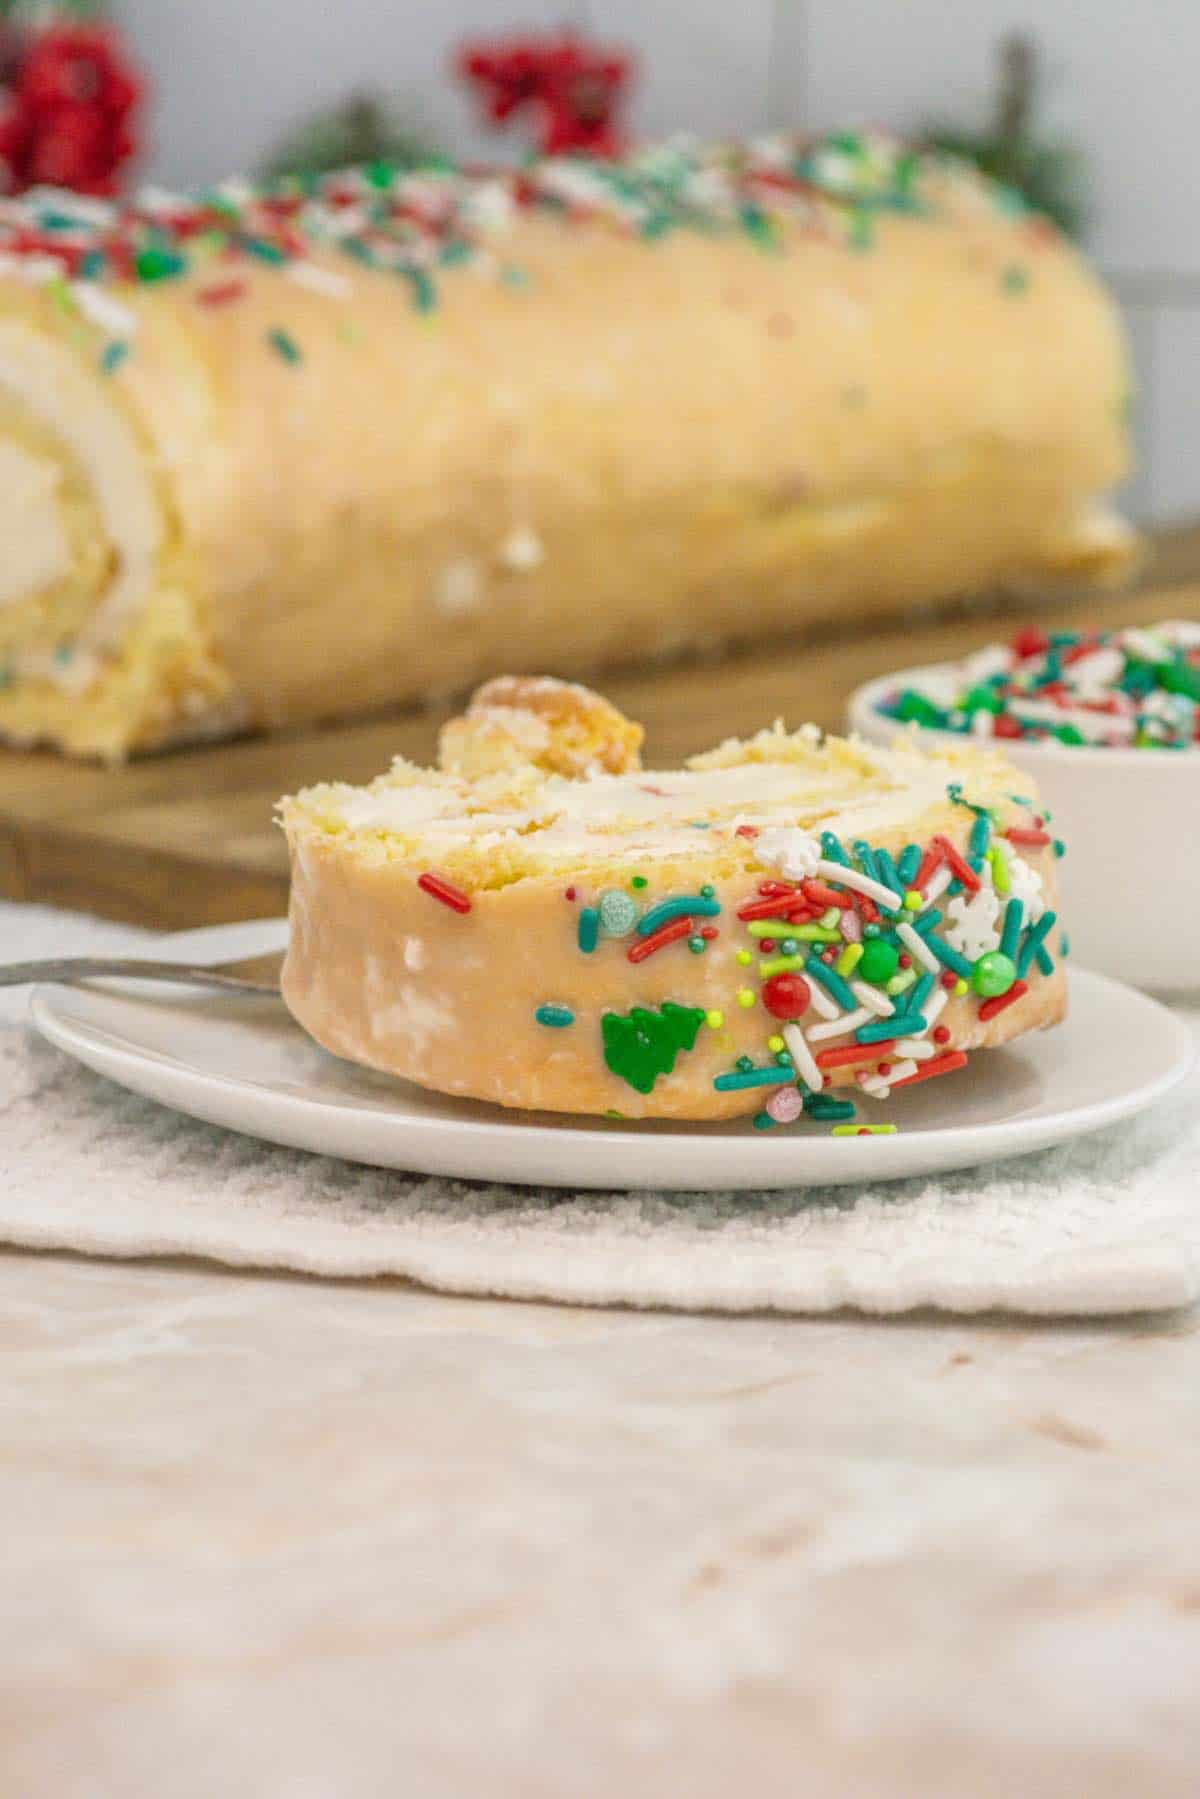 Red Velvet Cake Roll Recipe: How to Make It